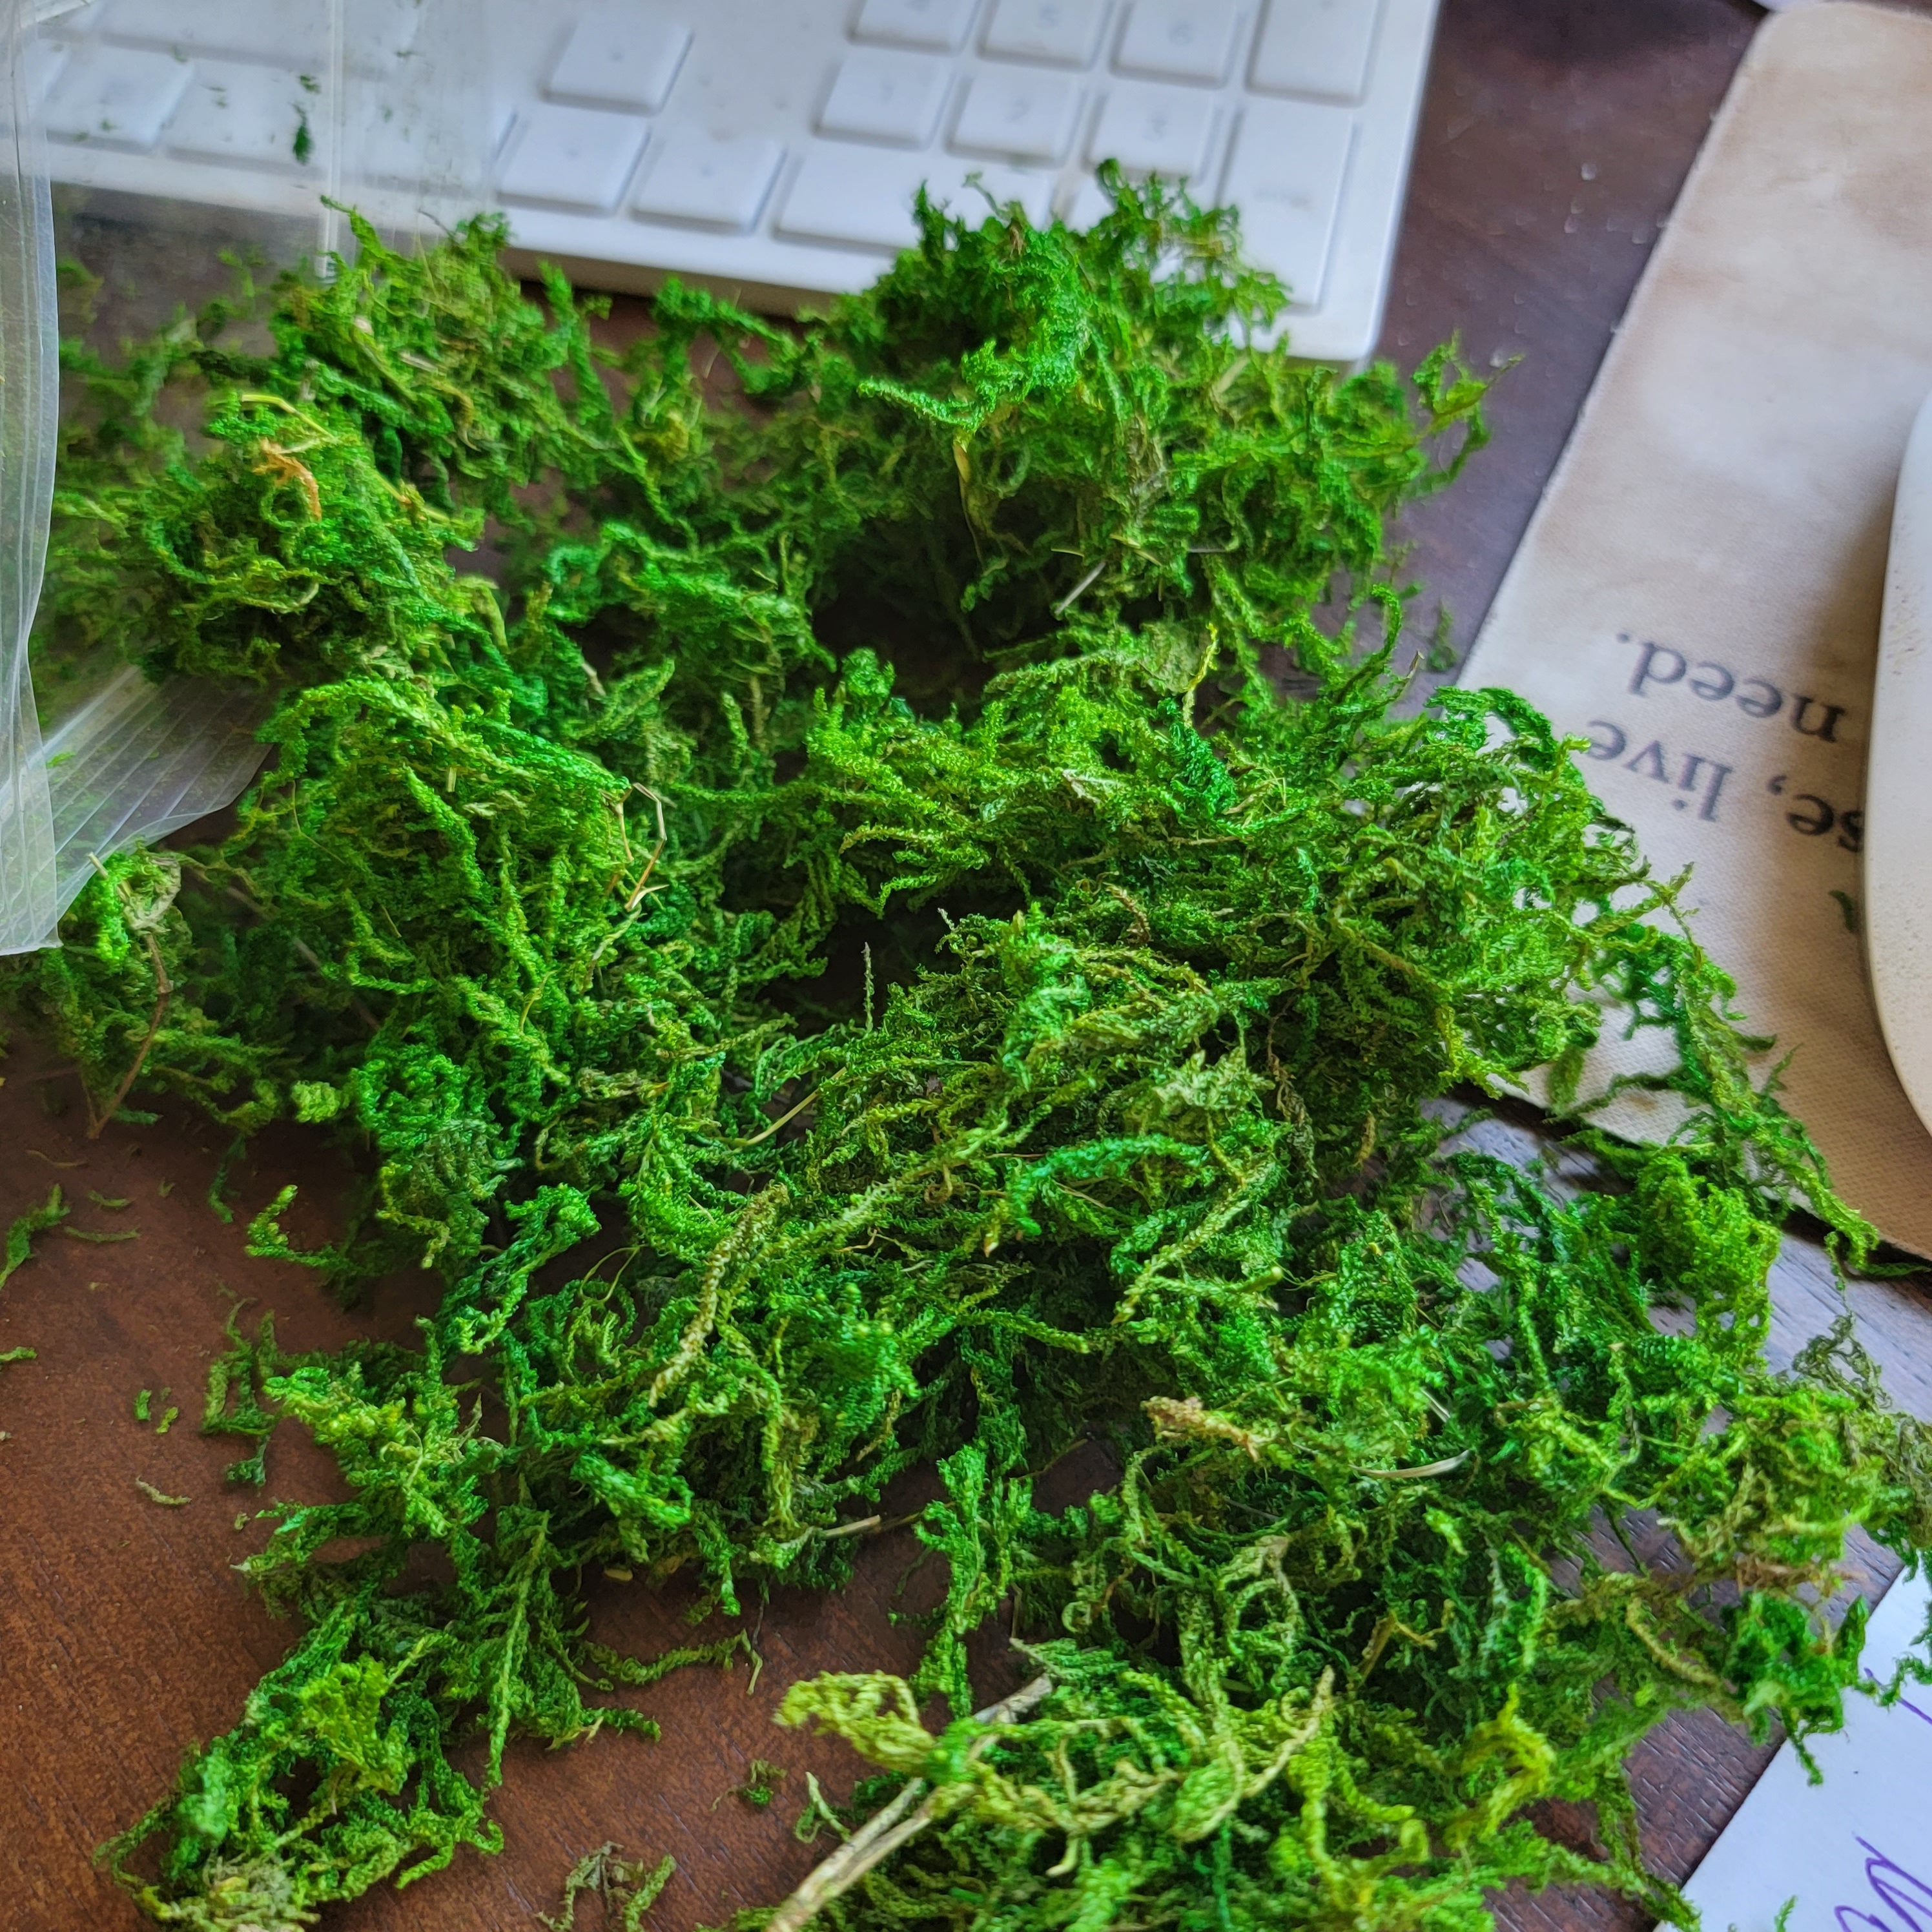 Compressed Sphagnum Moss, Makes 7 Quarts 